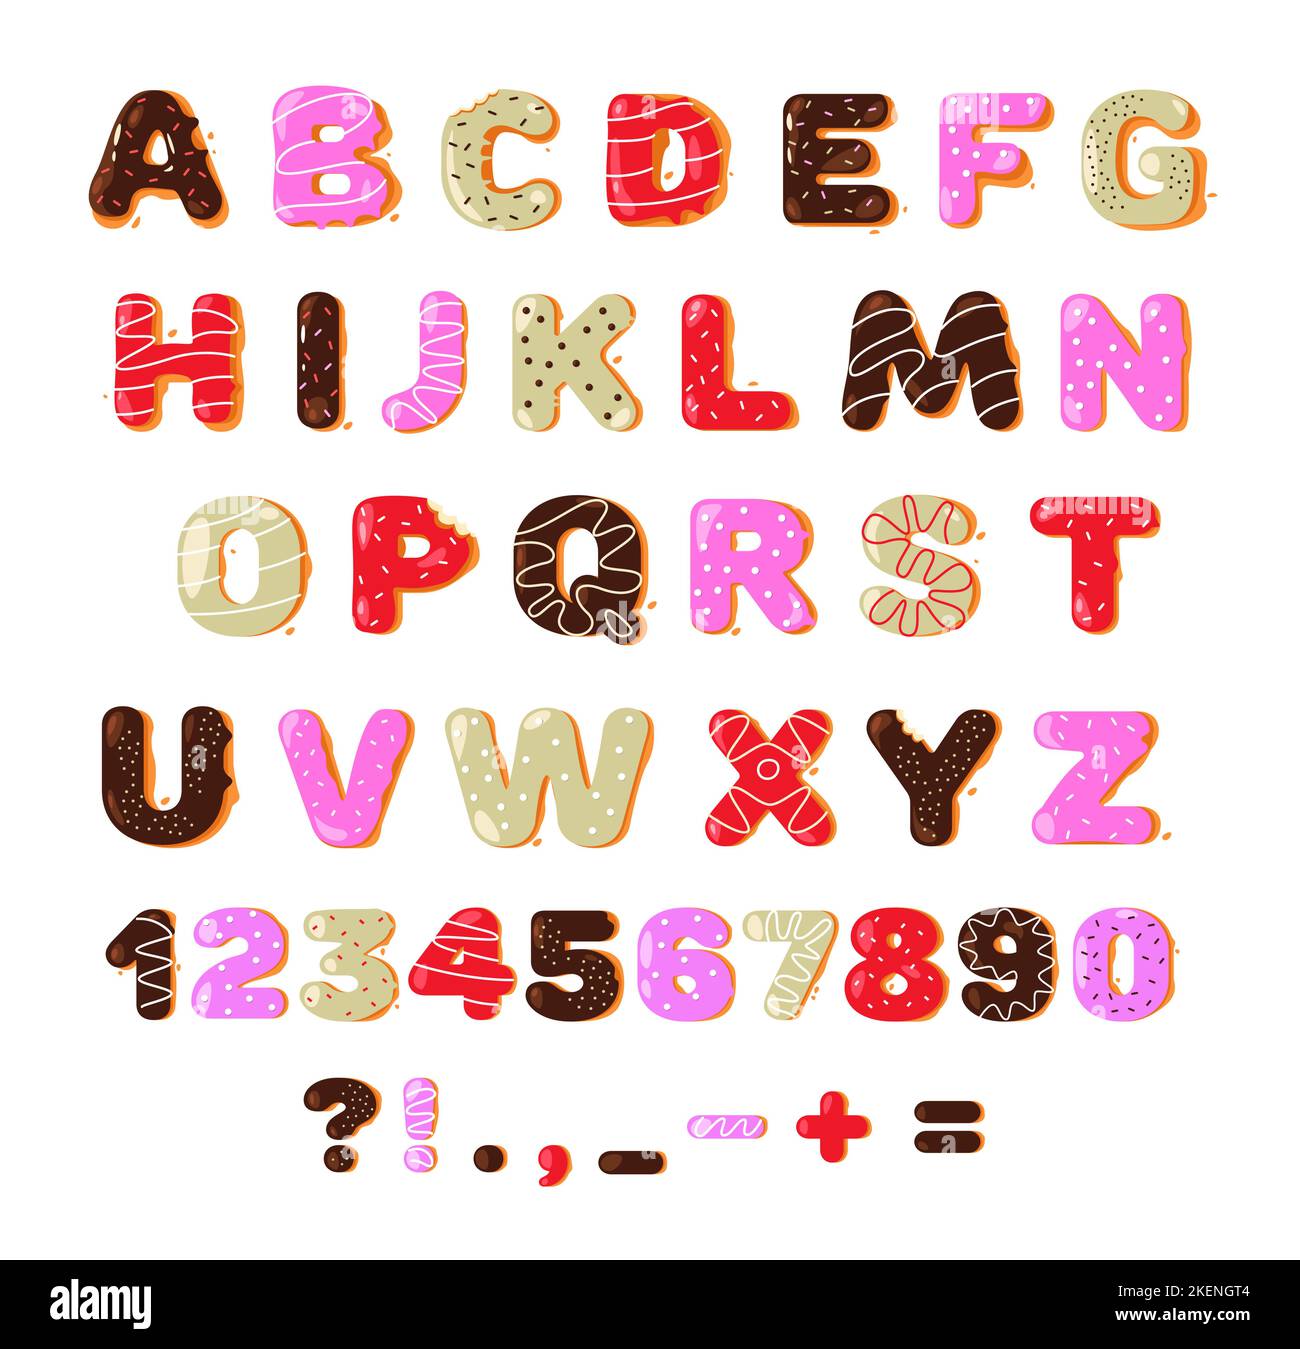 Carattere ciambella. Colorful dolce ciambella forno alfabeto latino lettere e numeri per la decorazione, cartoon bambini typeface grazioso dessert smaltato. Vettore Illustrazione Vettoriale